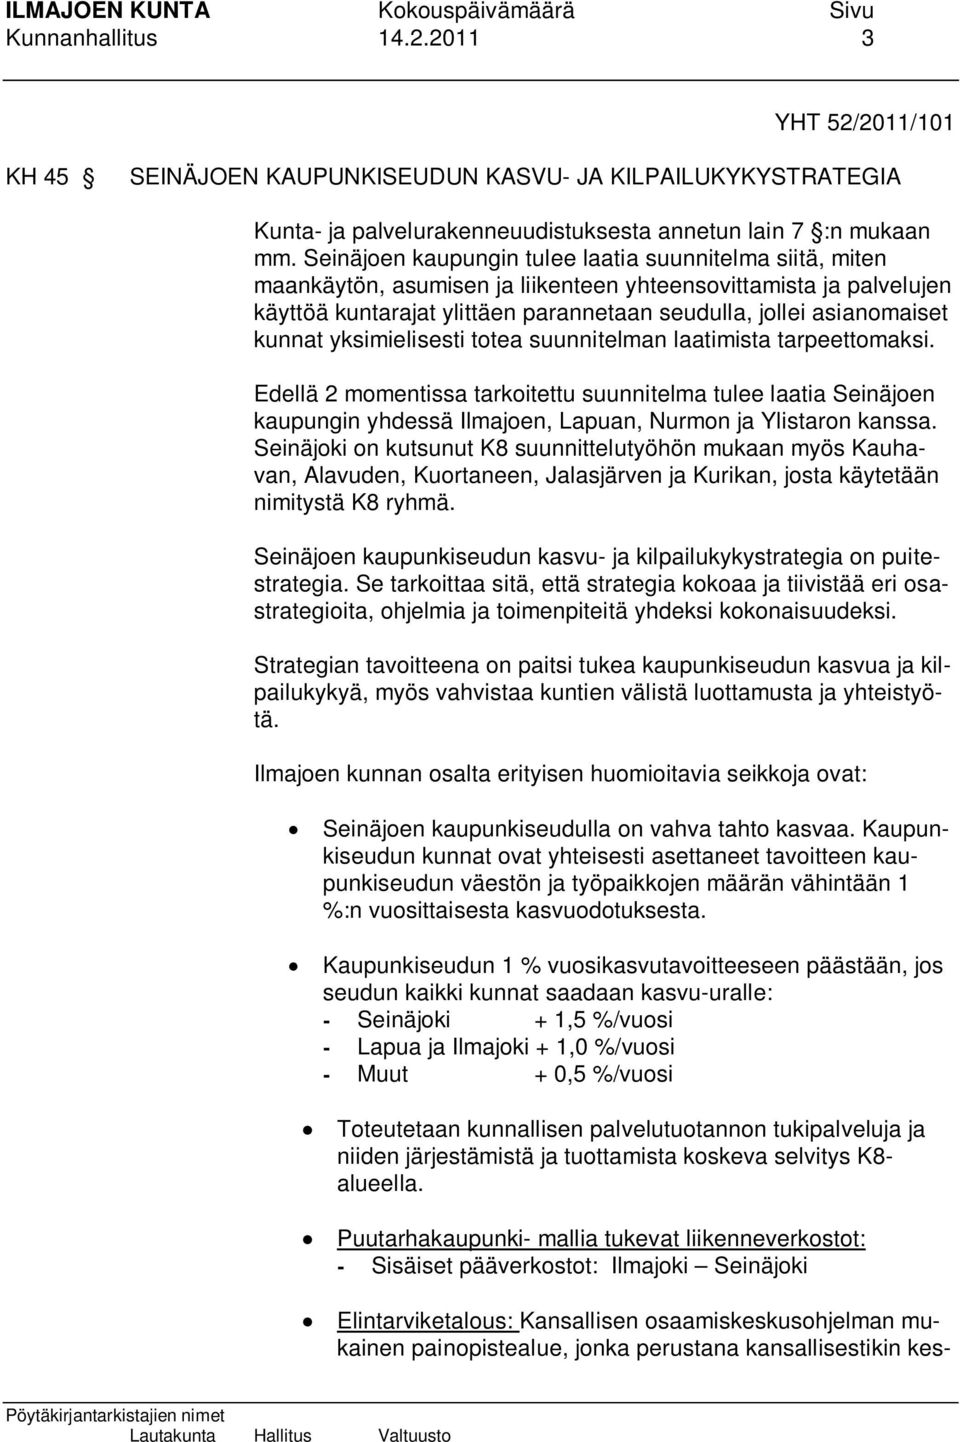 kunnat yksimielisesti totea suunnitelman laatimista tarpeettomaksi. Edellä 2 momentissa tarkoitettu suunnitelma tulee laatia Seinäjoen kaupungin yhdessä Ilmajoen, Lapuan, Nurmon ja Ylistaron kanssa.